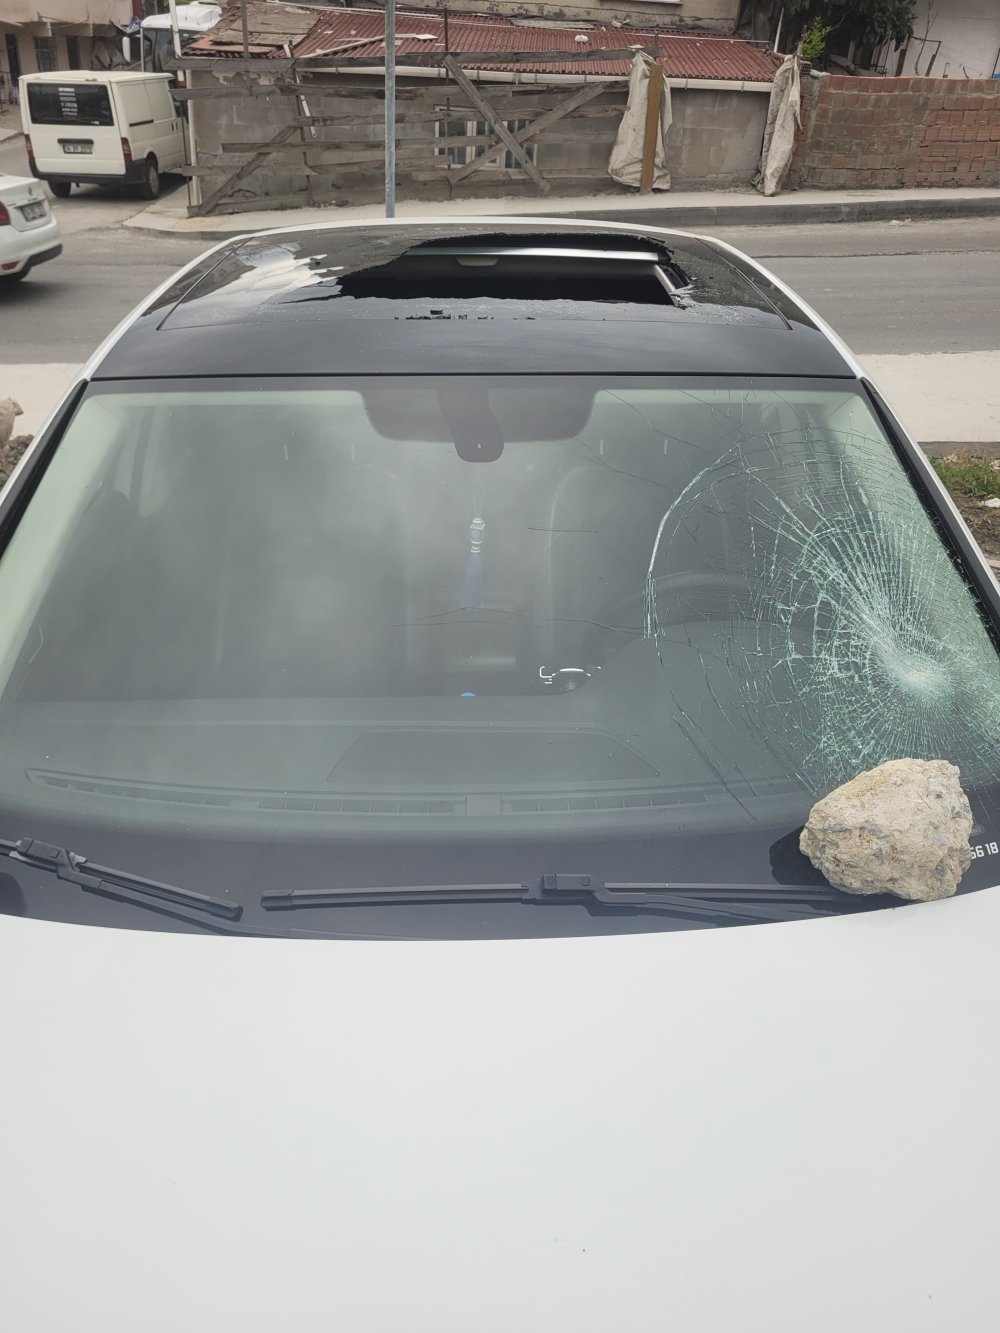 Akraba ziyaretine gelen ailenin aracının camları kırıldı